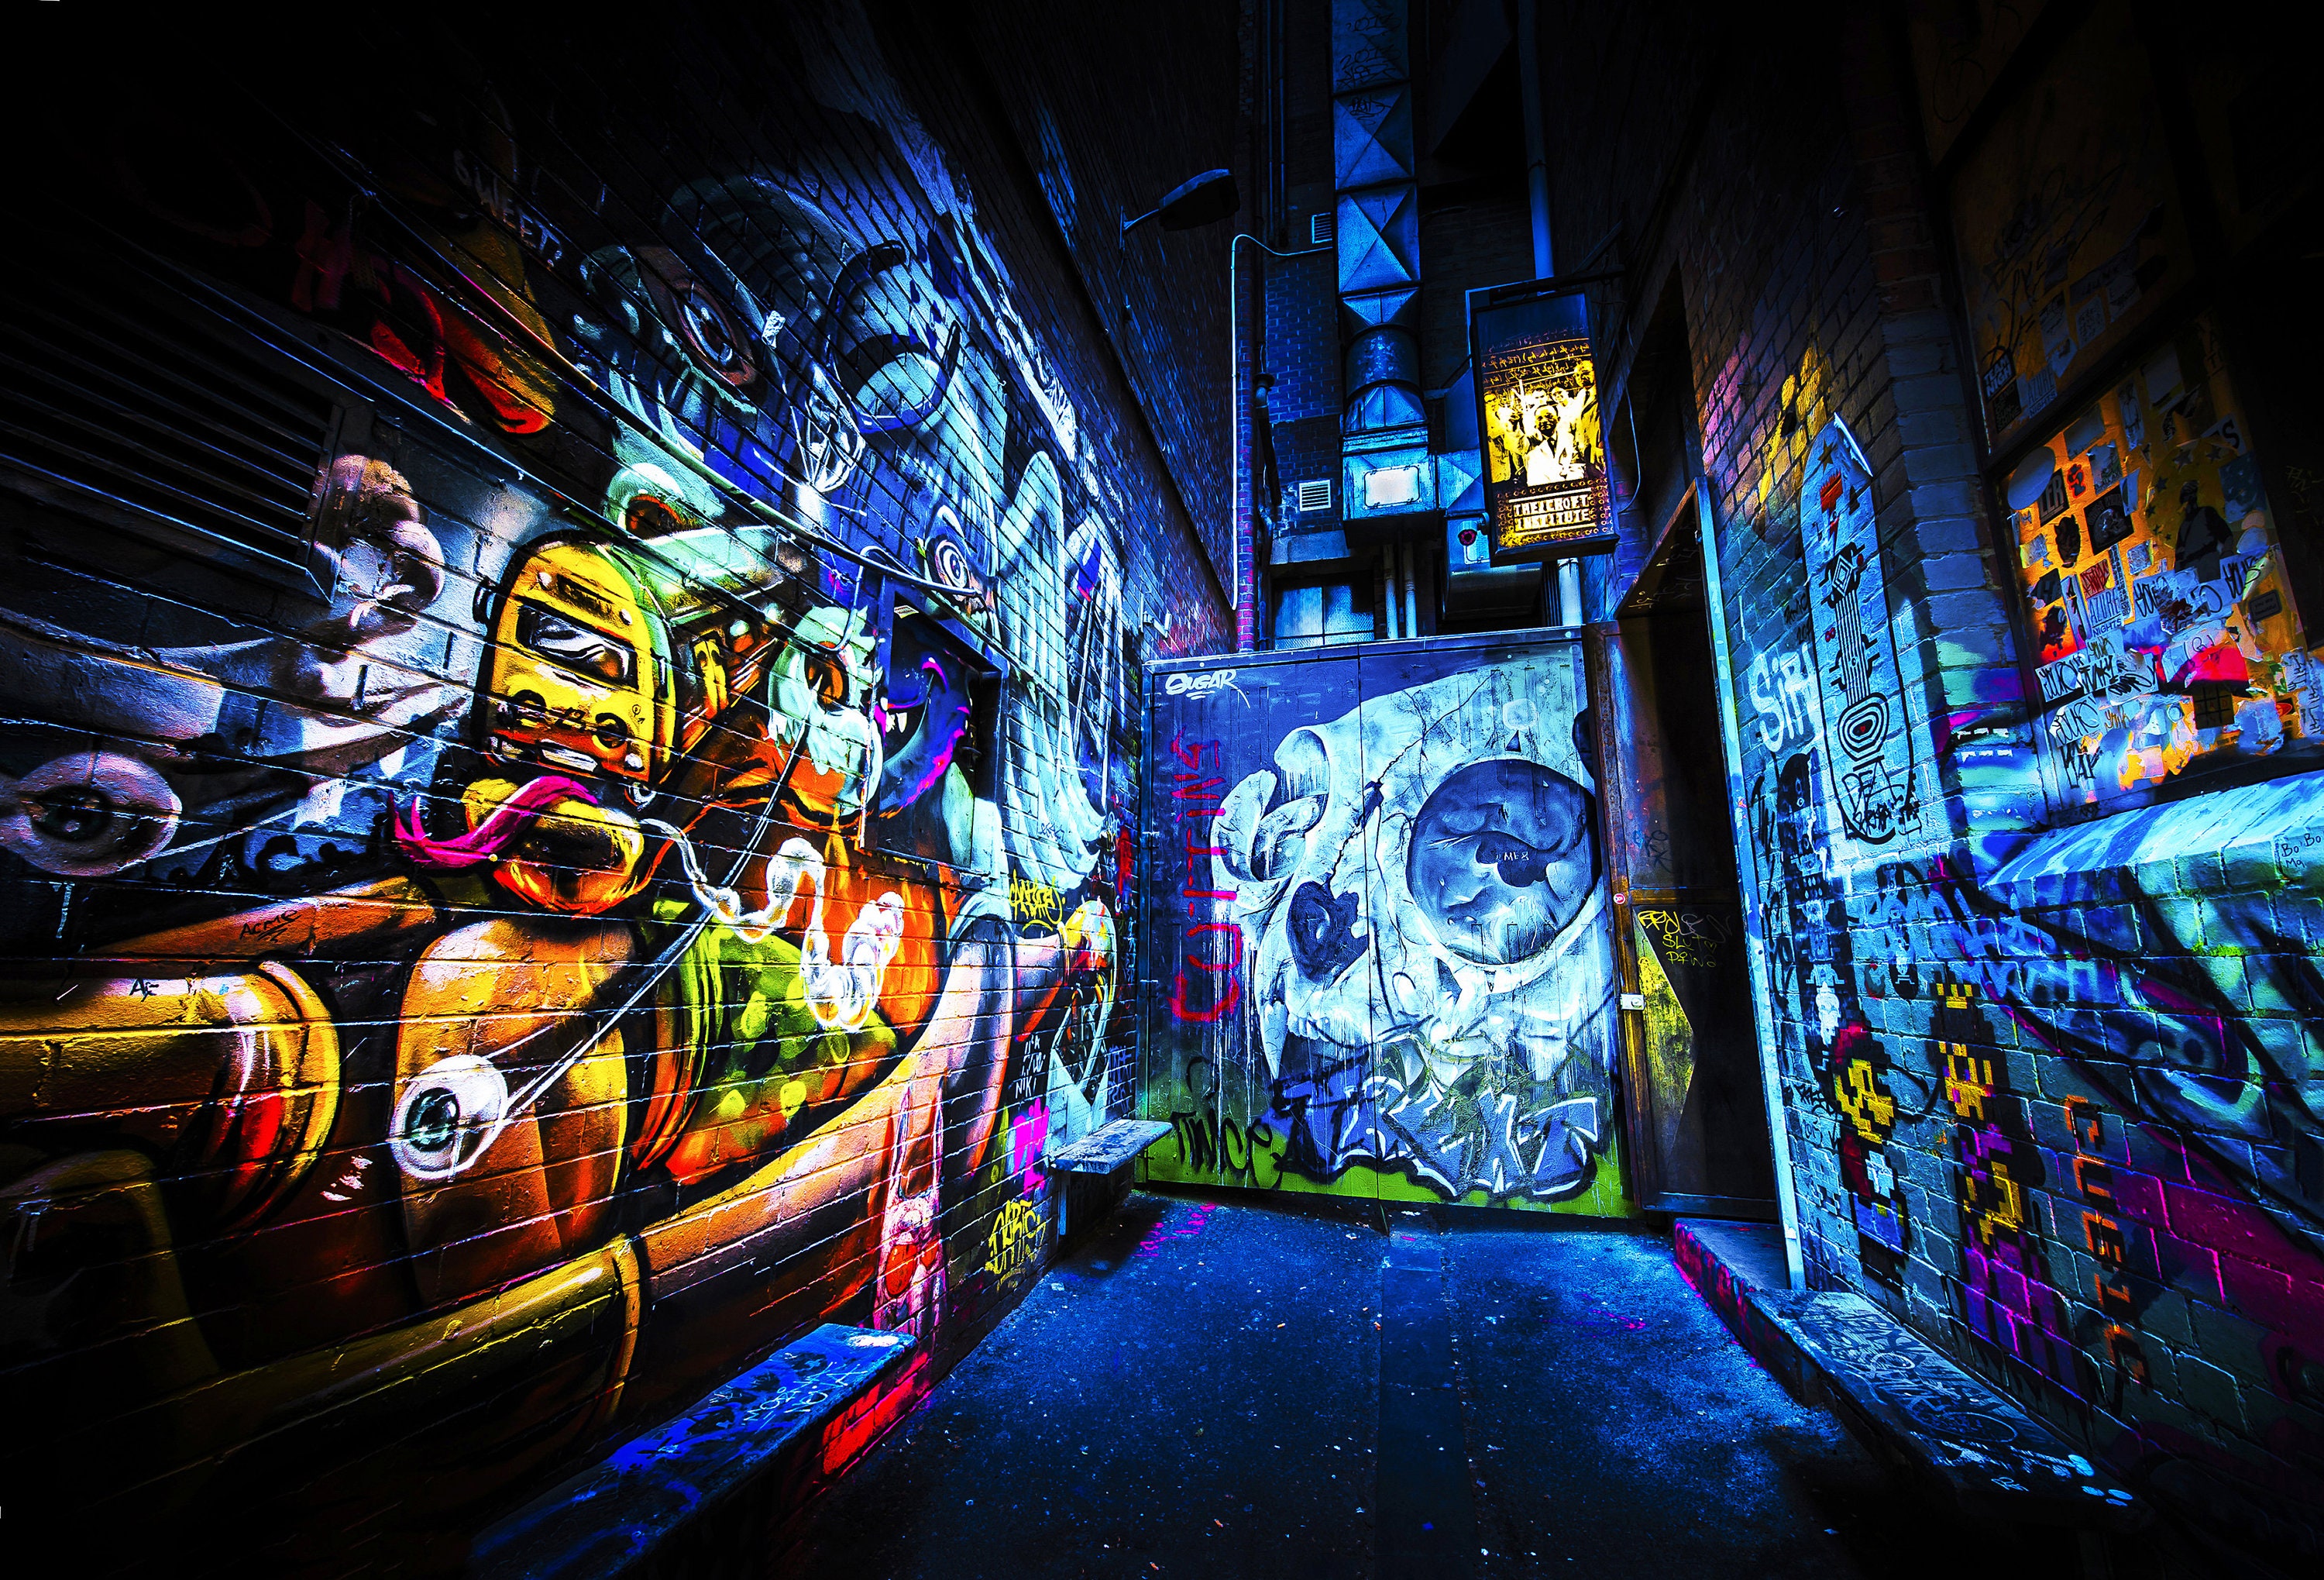 Street Art Mural, Melbourne Photography, Graffiti wall art, blue poster